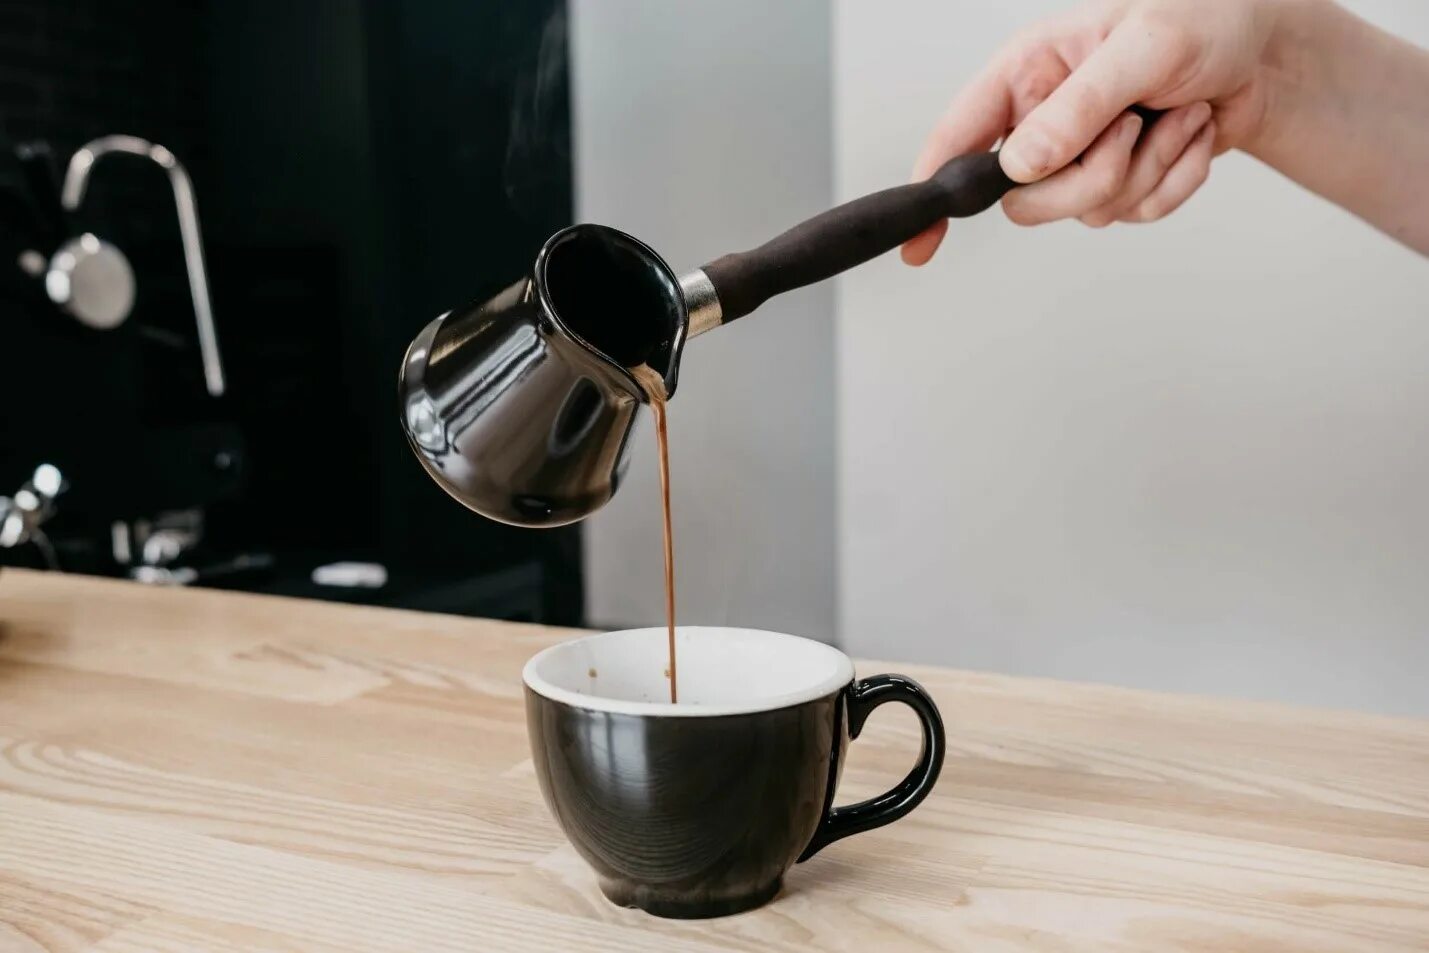 Турка для кофе. Наливает кофе. Приготовление кофе. Кофе в турке. Как делать домашнее кофе